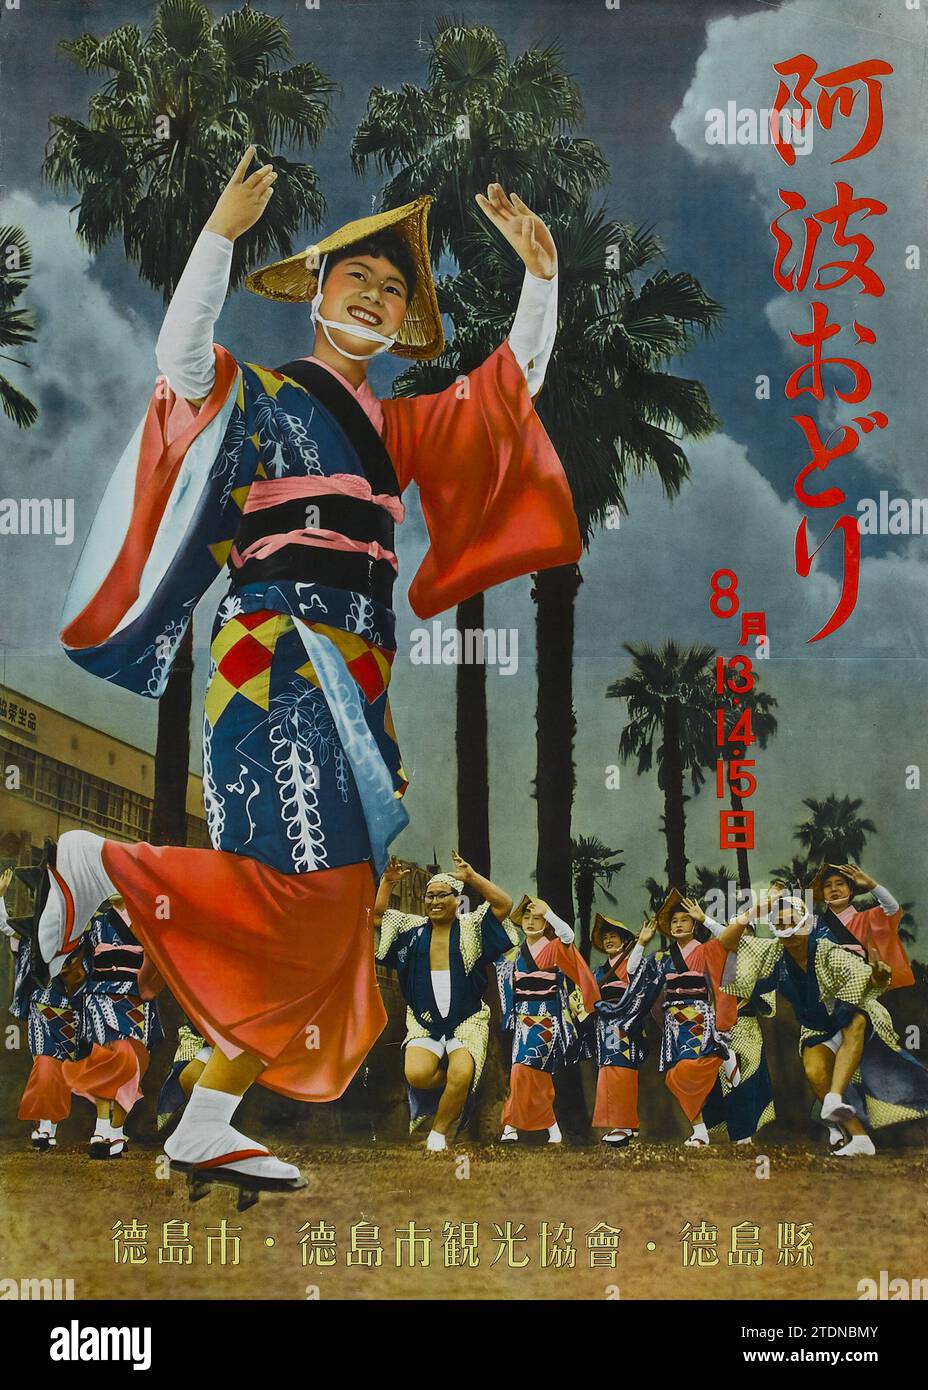 Affiche du tourisme japonais (Bureau de voyage japonais, années 1950). Affiche de voyage japonaise Banque D'Images